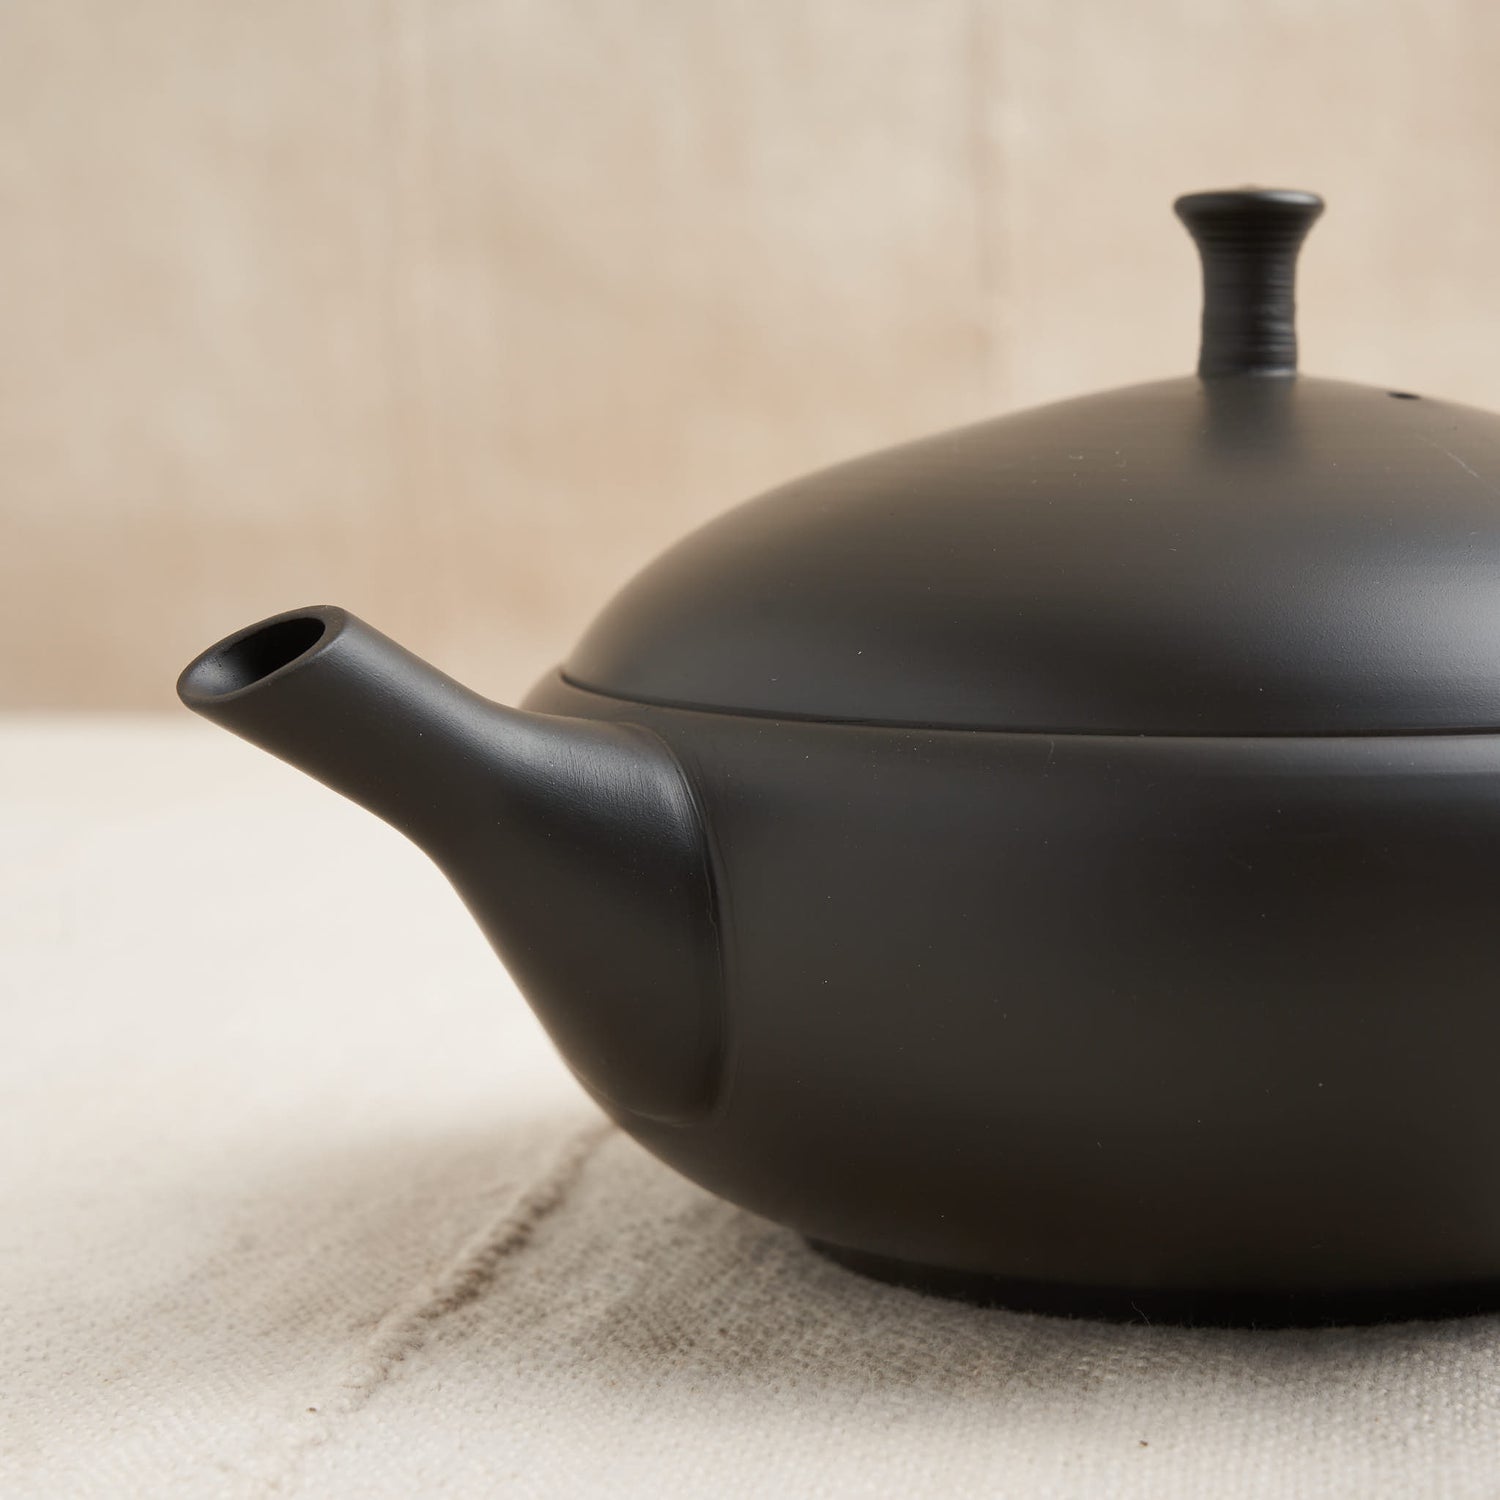 Tokoname Teapot, Unglazed Iron Black Clay